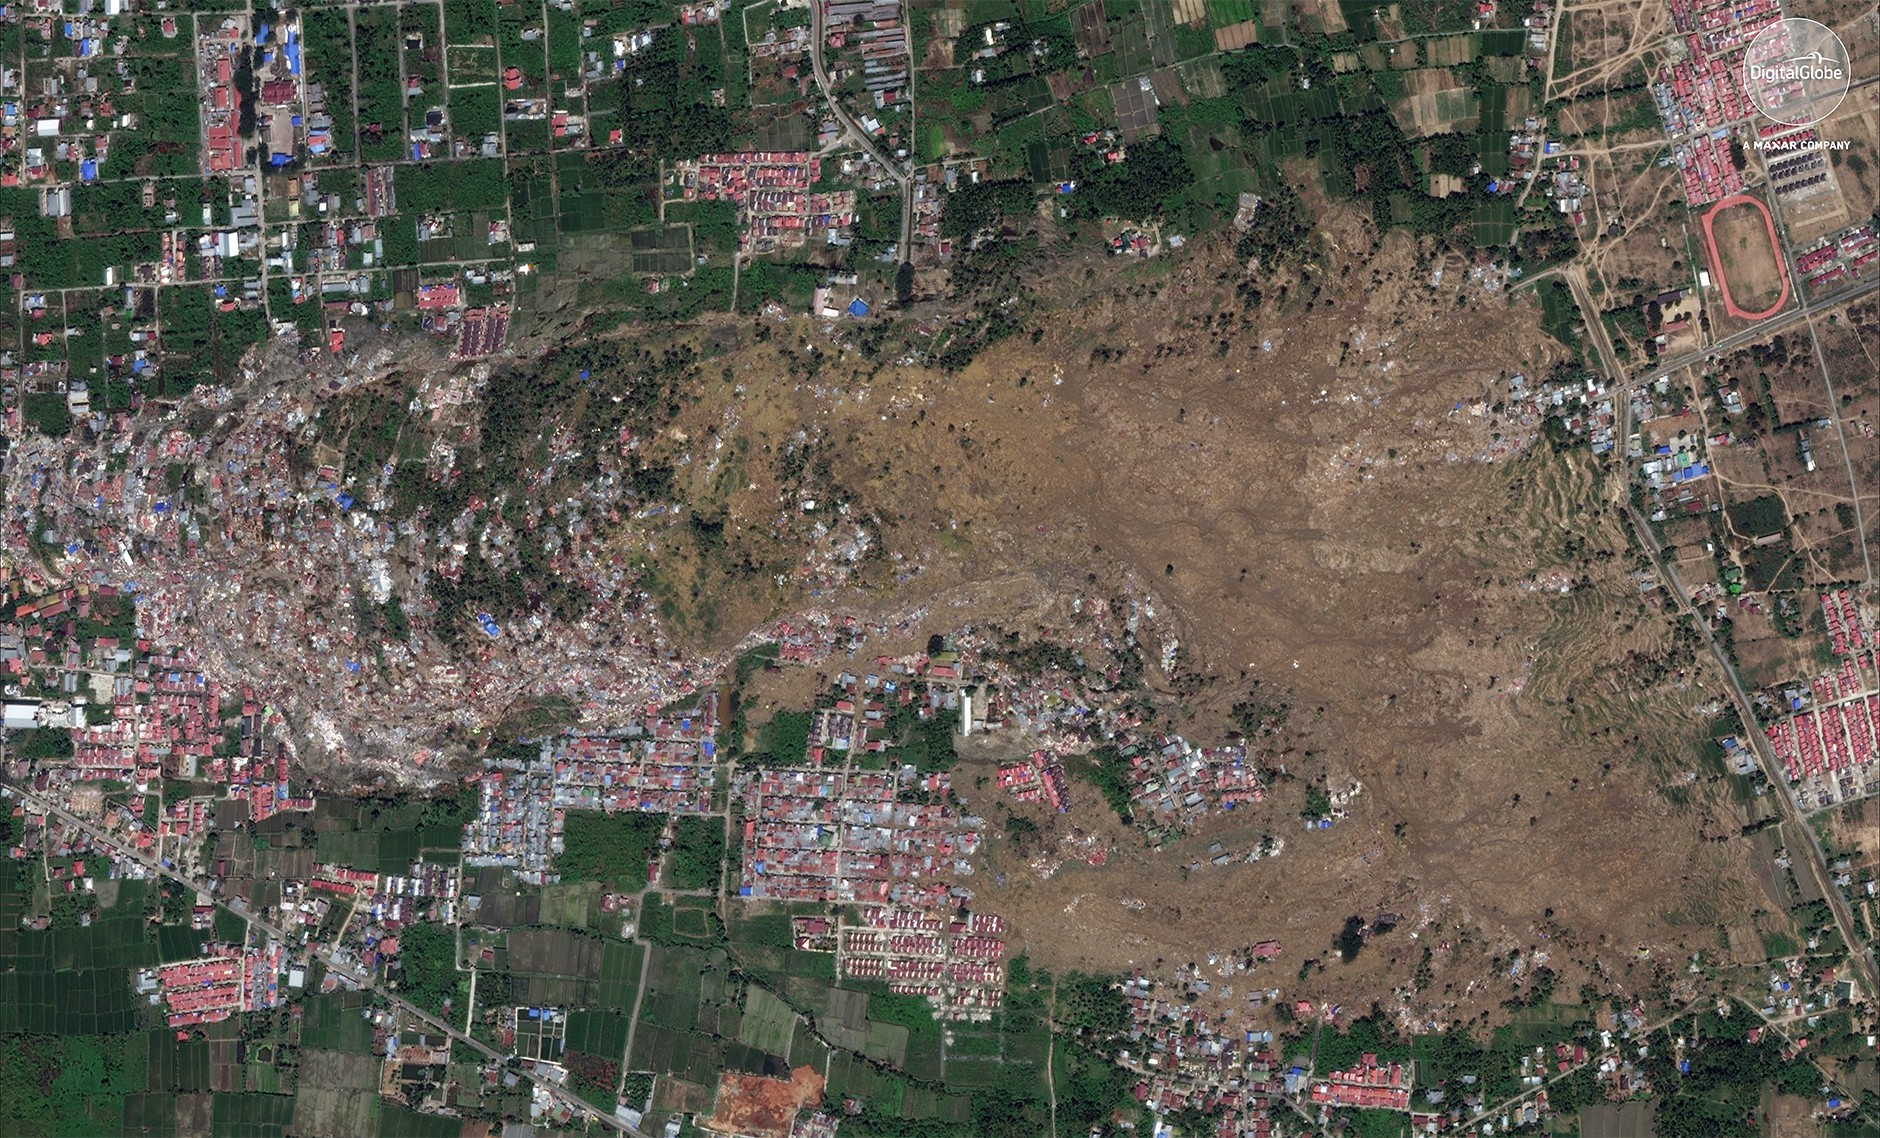 Bộ ảnh trước - sau này sẽ cho bạn thấy trận động đất khiến ít nhất 1.200 người chết ở Palu, Indonesia khủng khiếp như thế nào-11